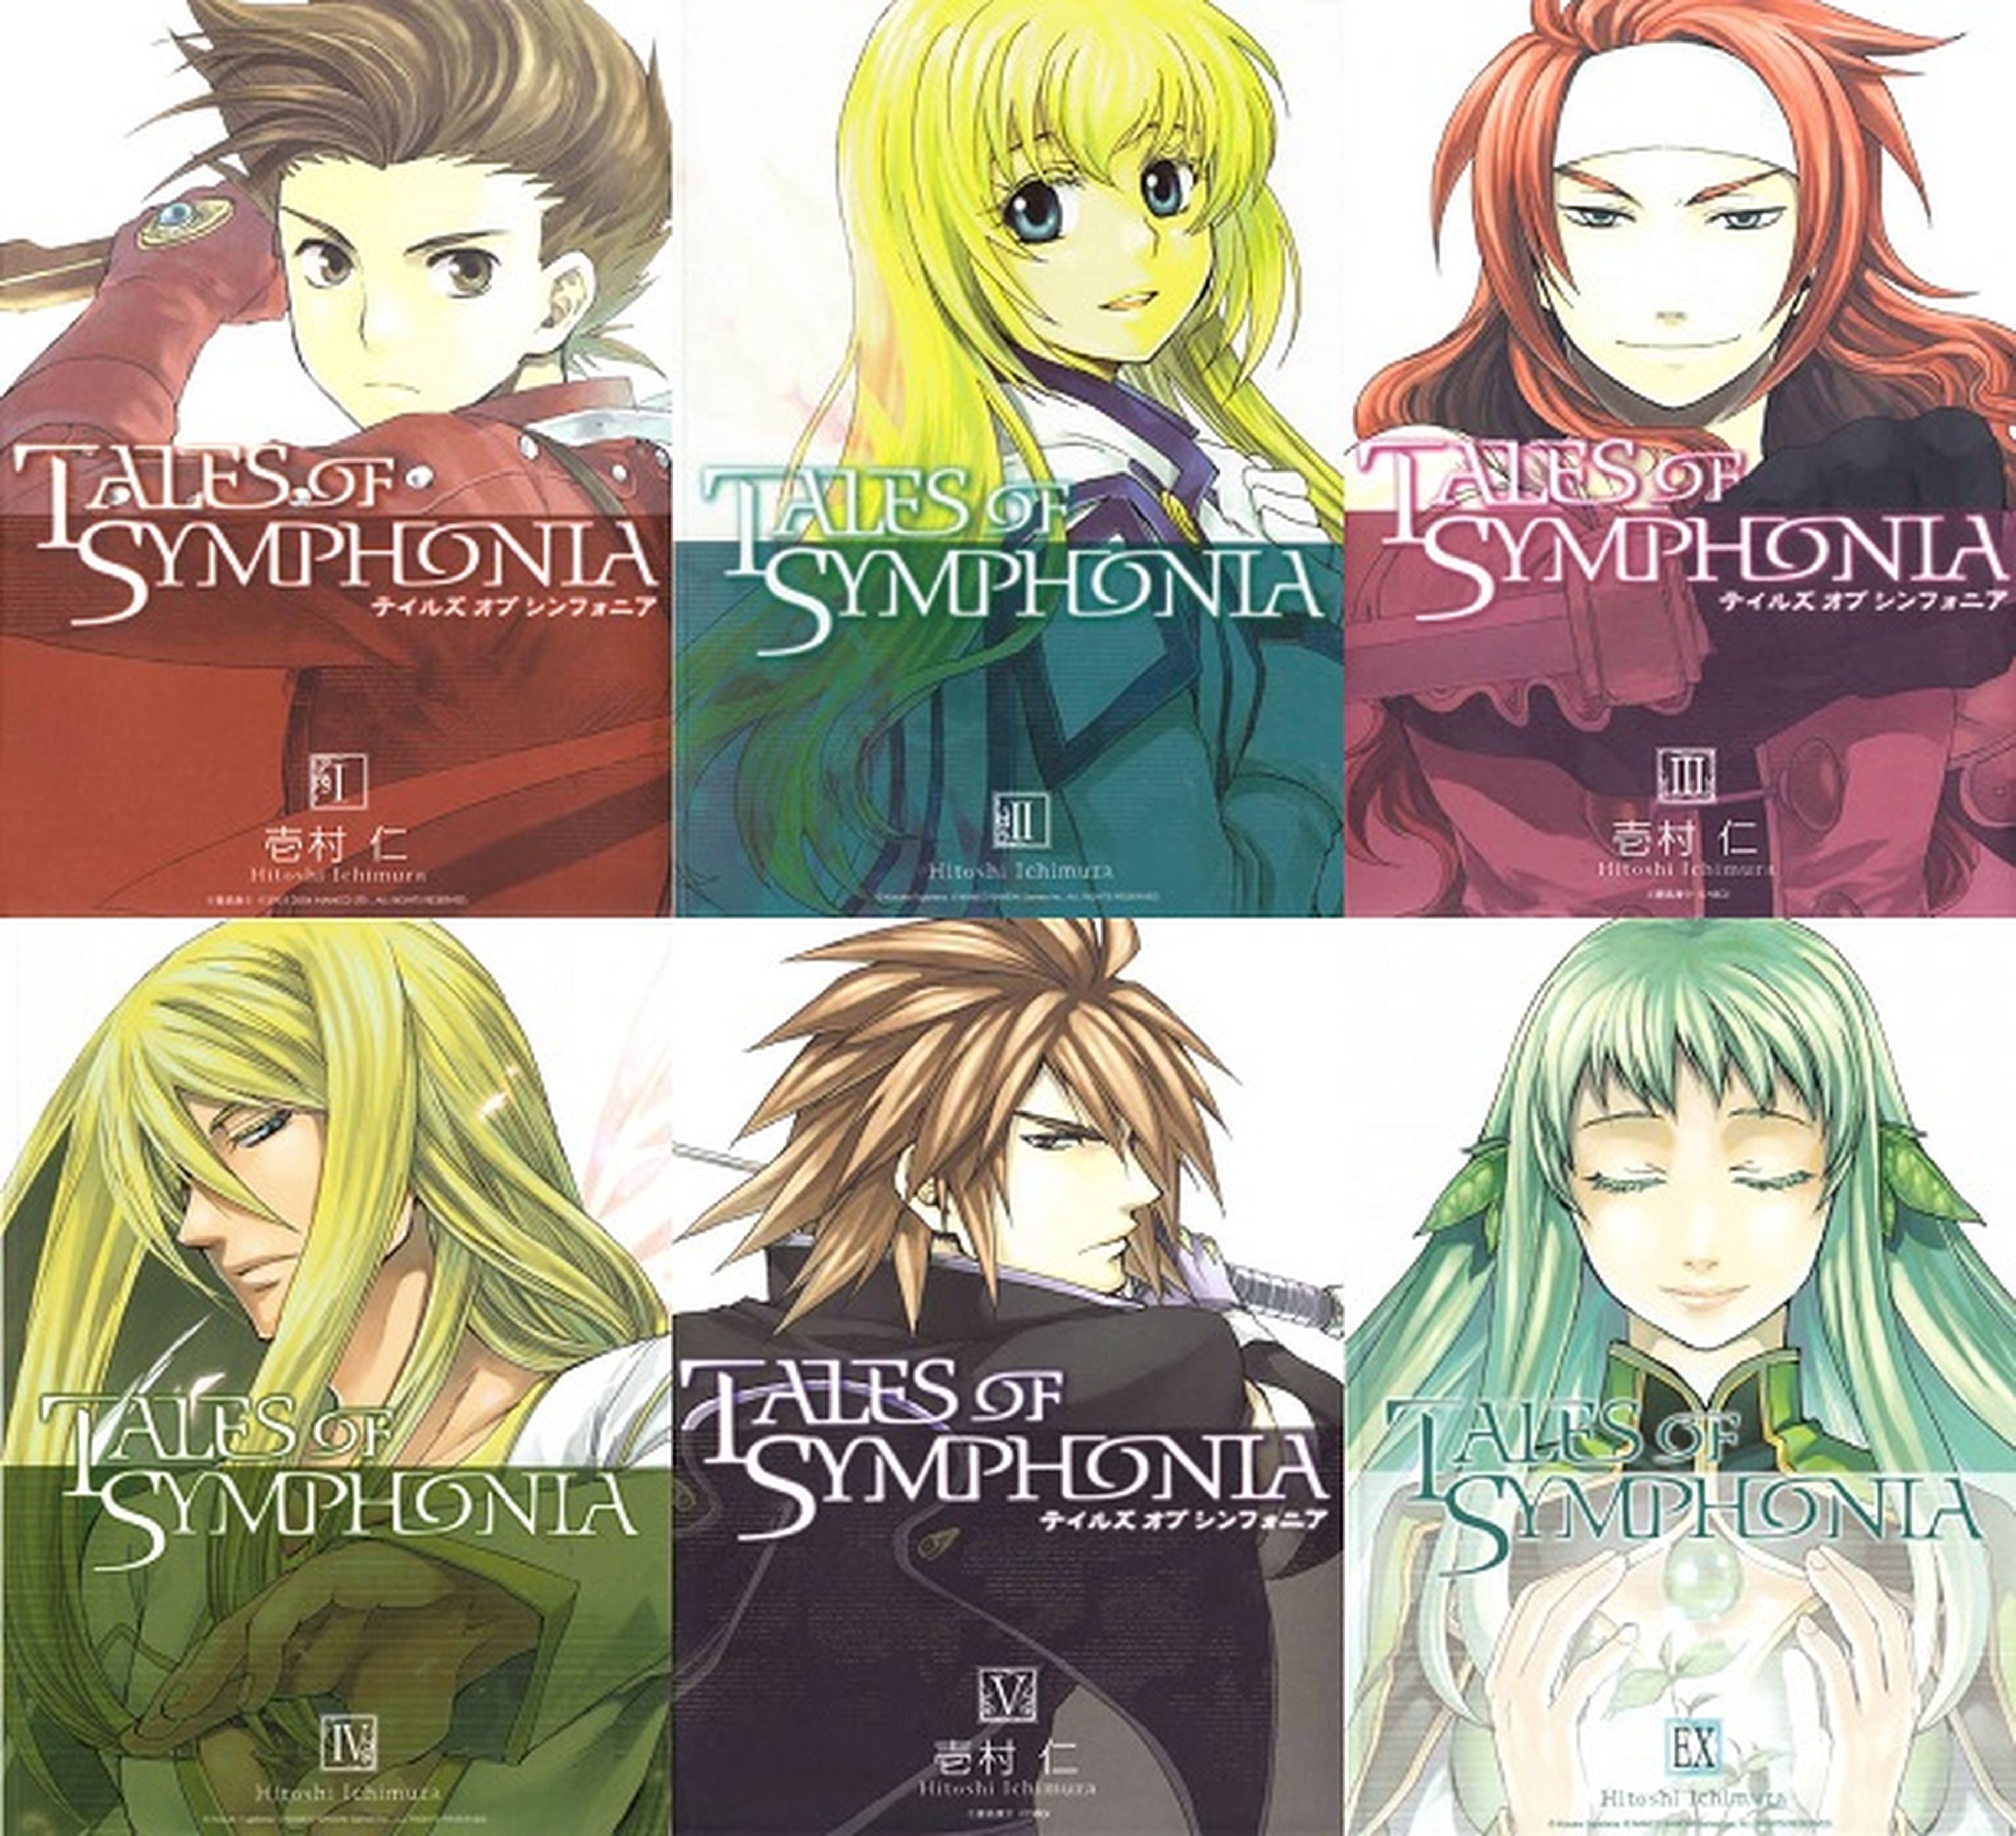 Licenciado en España el manga de Tales of Symphonia